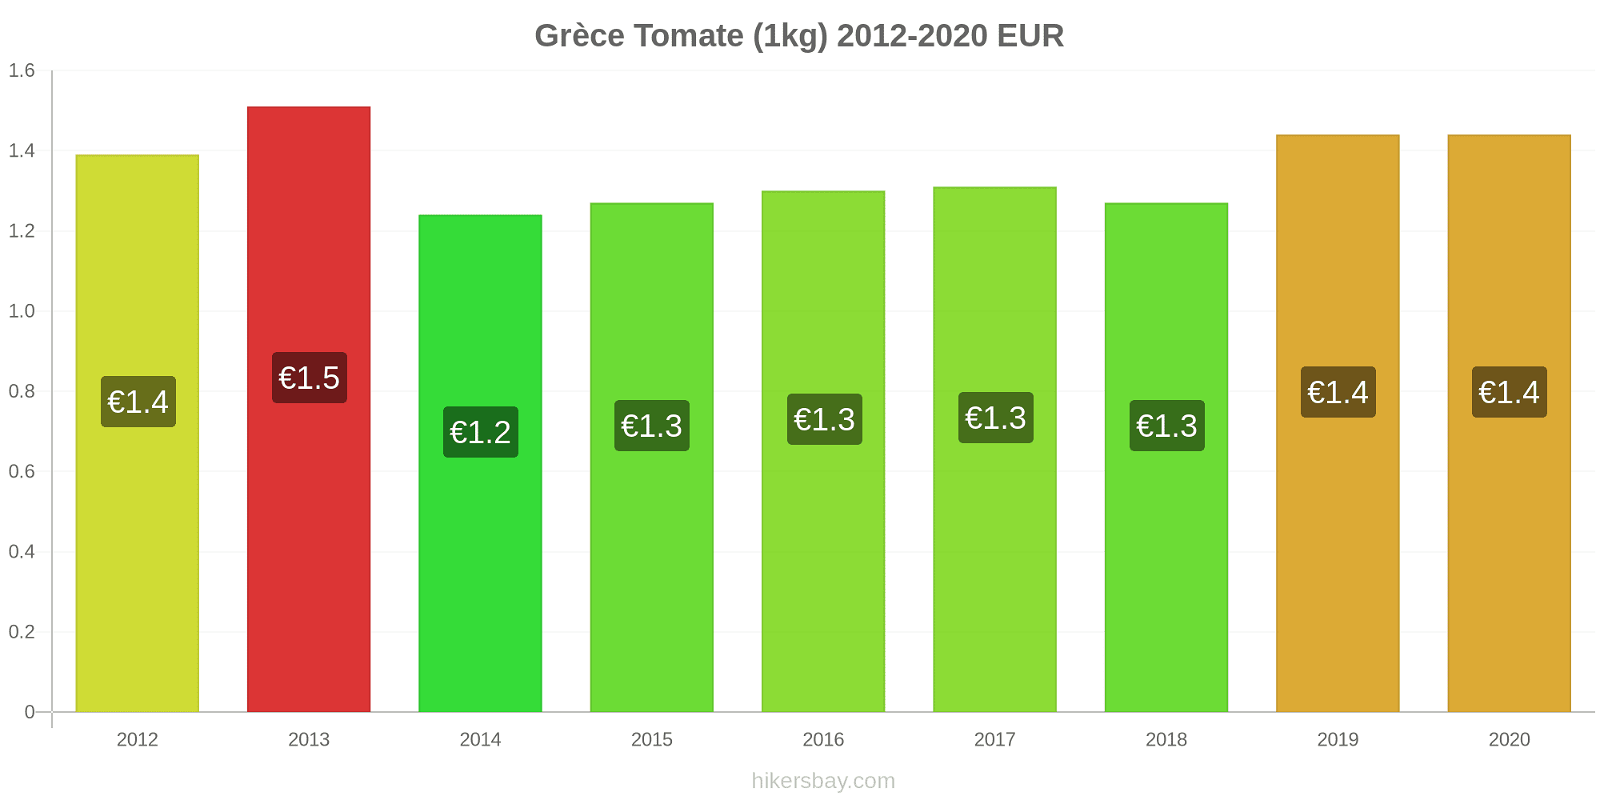 Grèce changements de prix Tomate (1kg) hikersbay.com